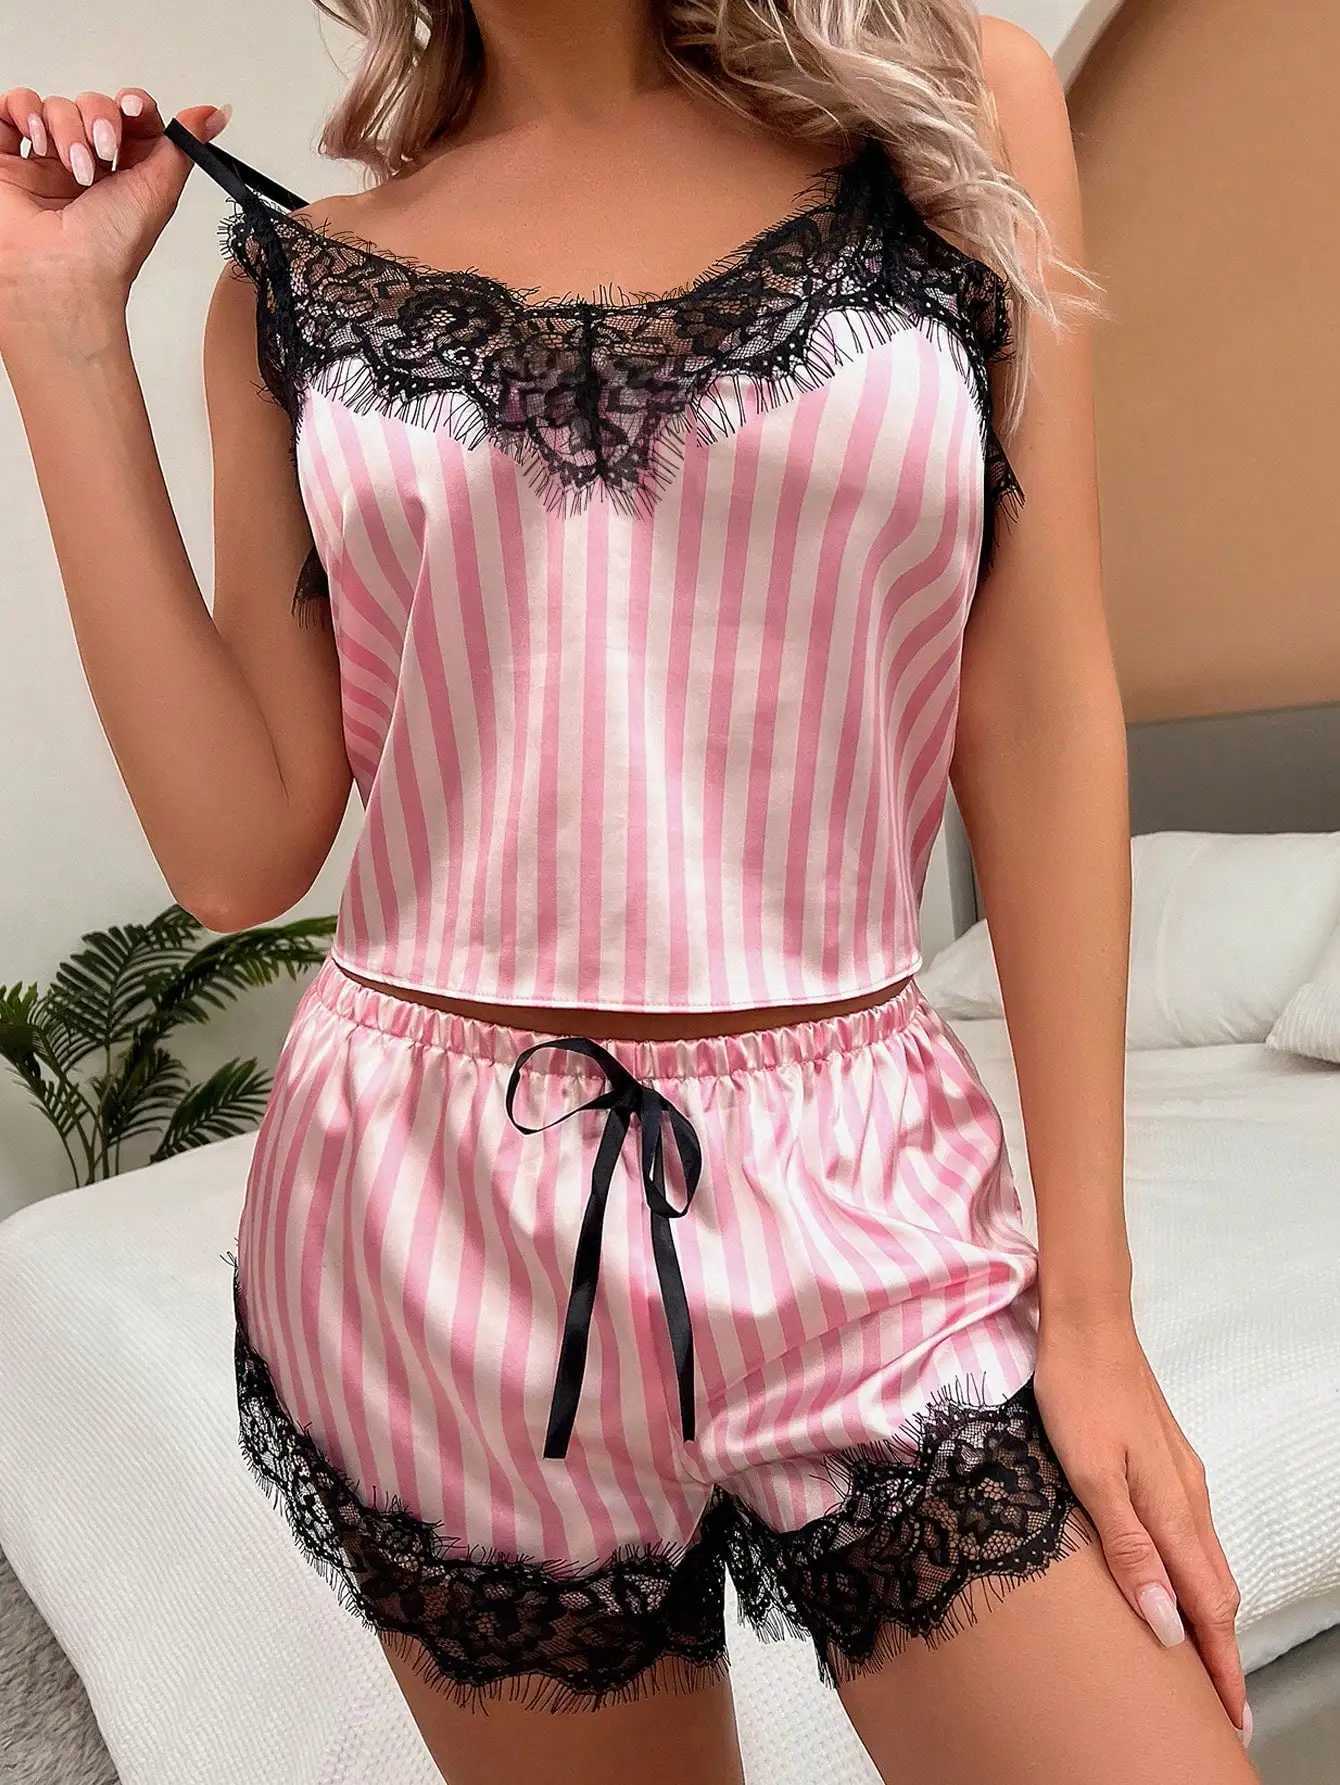 Overig Slipje Nieuw Sexy pyjama set kant zacht zijde-achtig halter lingerie roze wit verticaal gestreept leuk erotisch nachtkleding sexy dames YQ240130